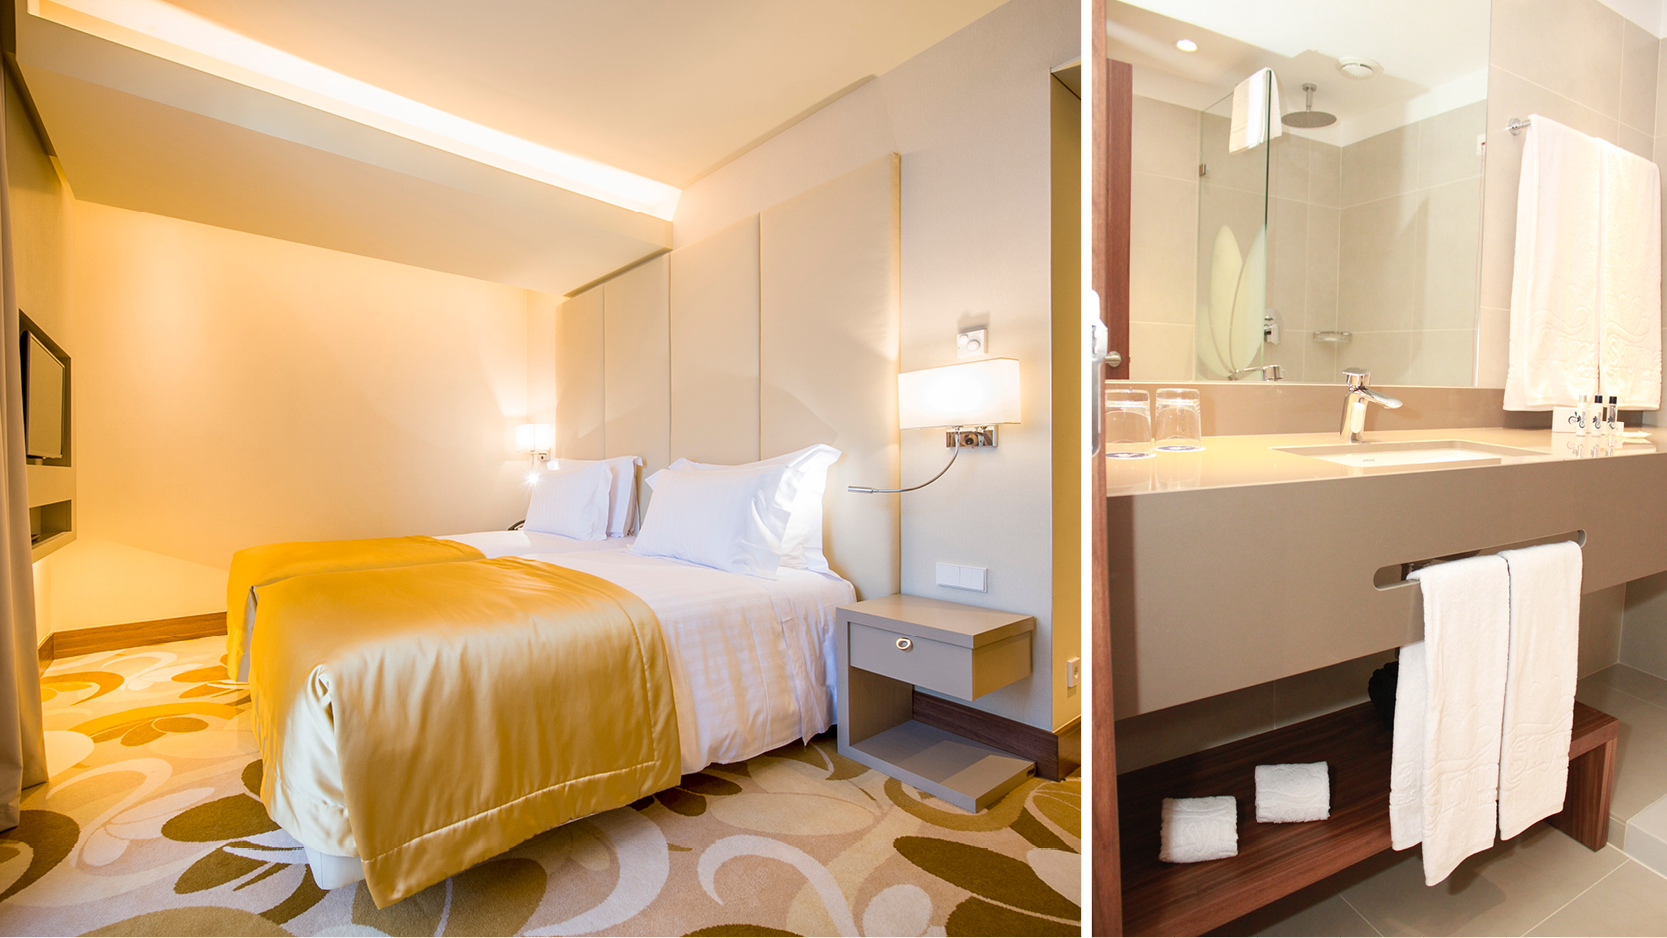 Ljusa och moderna dubbelrum med goda faciliteter p Skyna Hotel i centrala Lissabon.